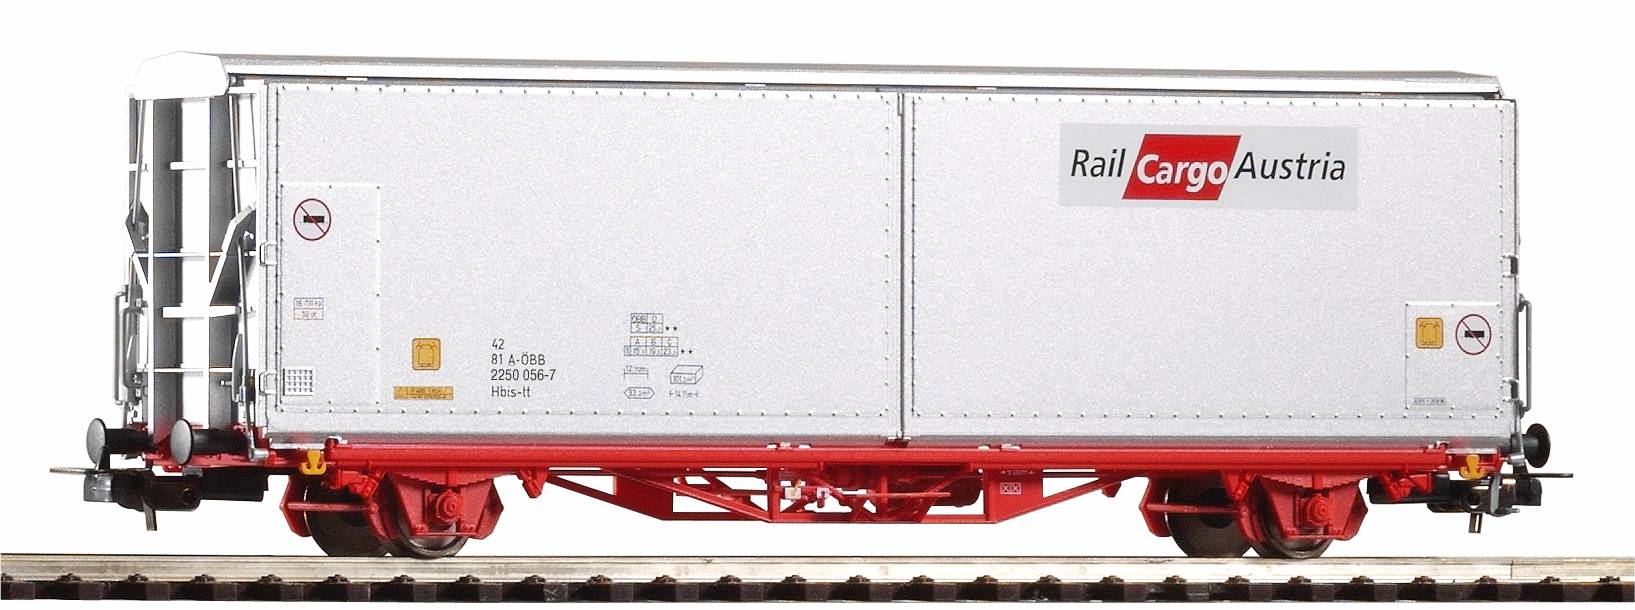 Großraumschiebewandwg. Hbis- - Großraumschiebewandwagen Hbis-tt Rail Cargo Austria V